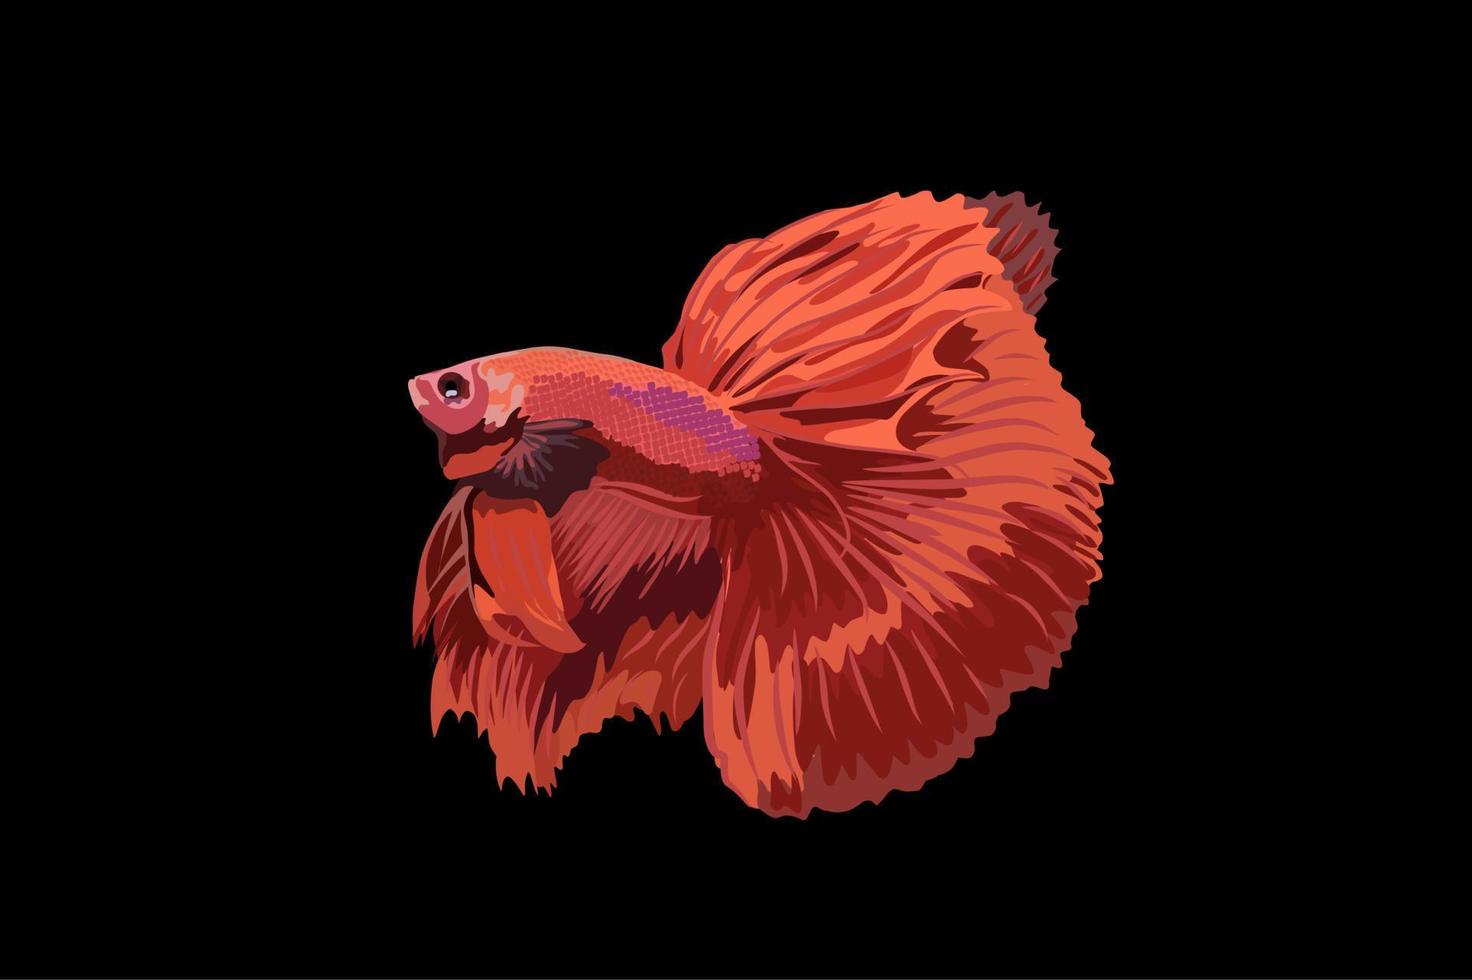 betta fish vector illustration